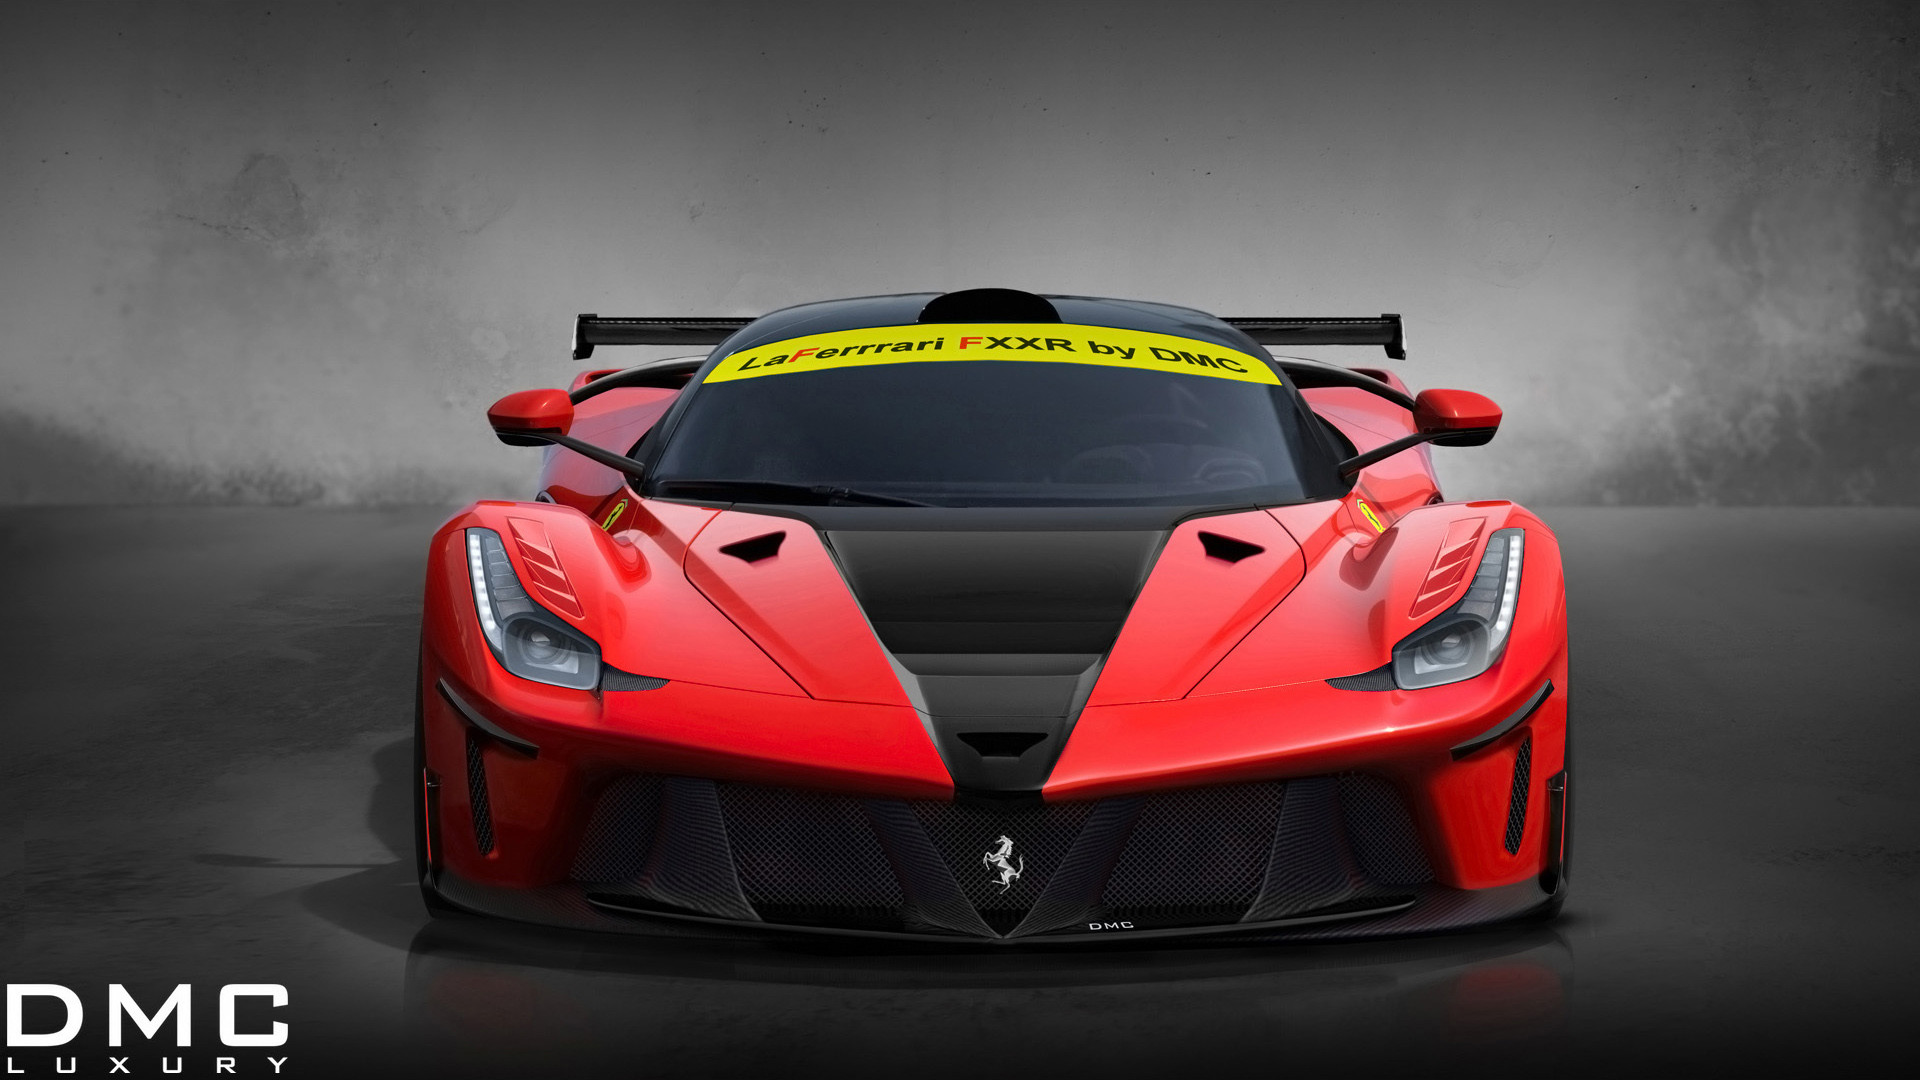 1920x1080 2014 DMC Ferrari LaFerrari FXXR